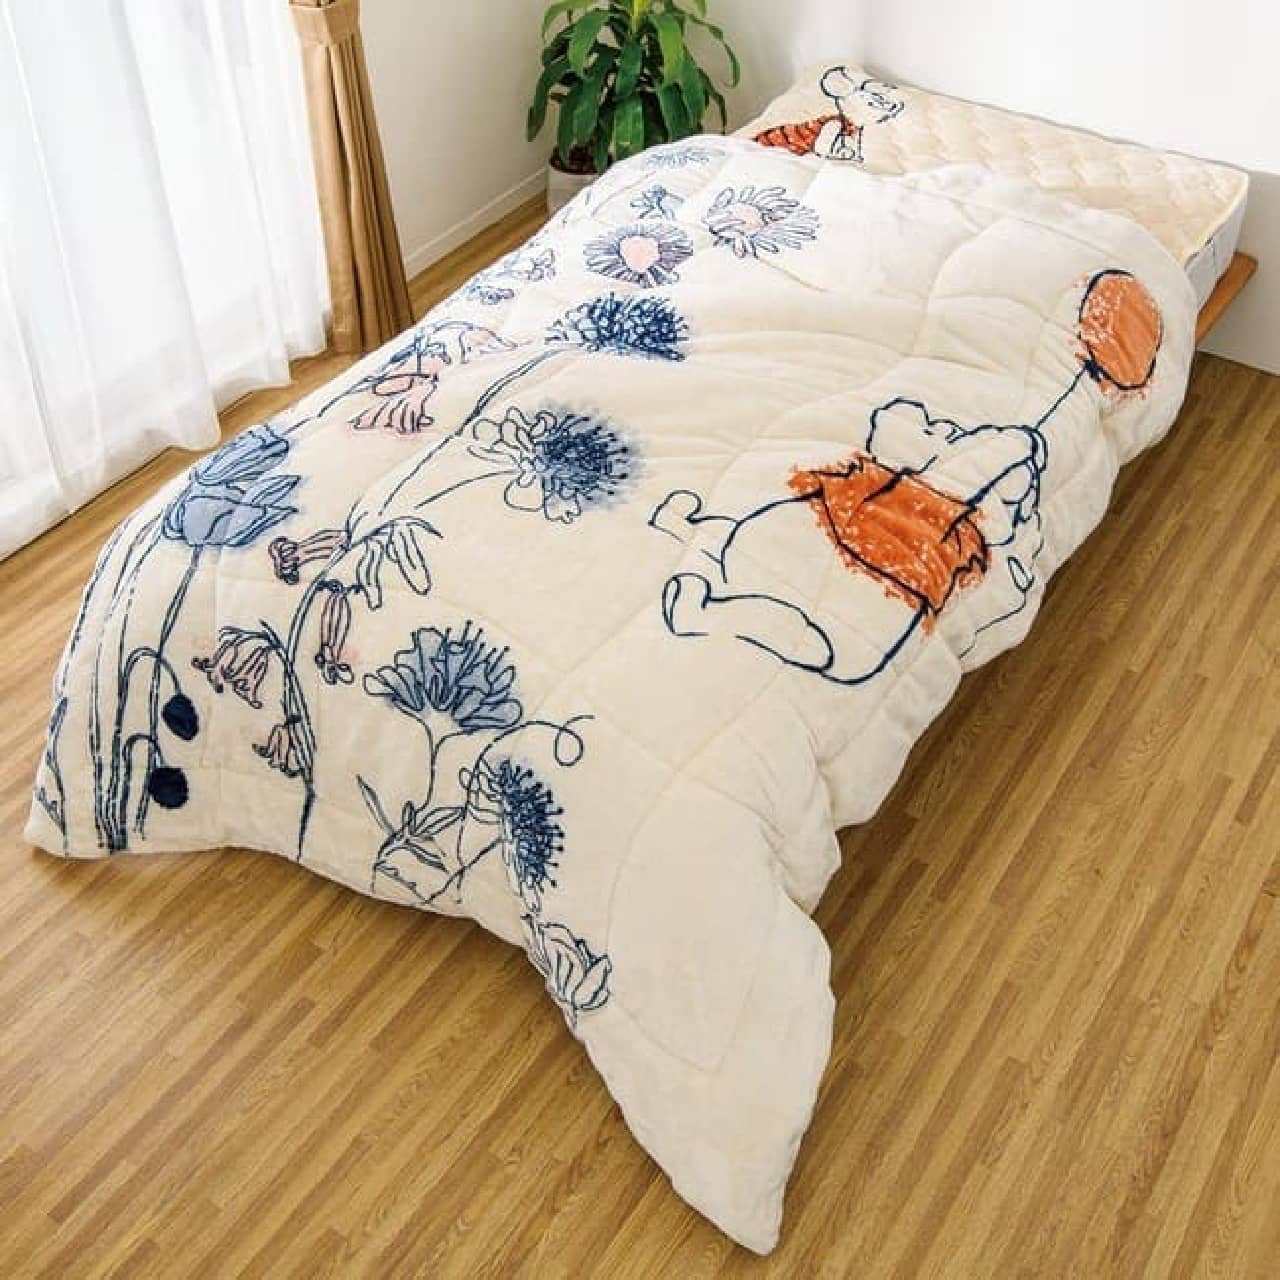 "Heat Loop DX Winnie the Pooh Design" from Dinos --Blanket & mattress to keep warmth